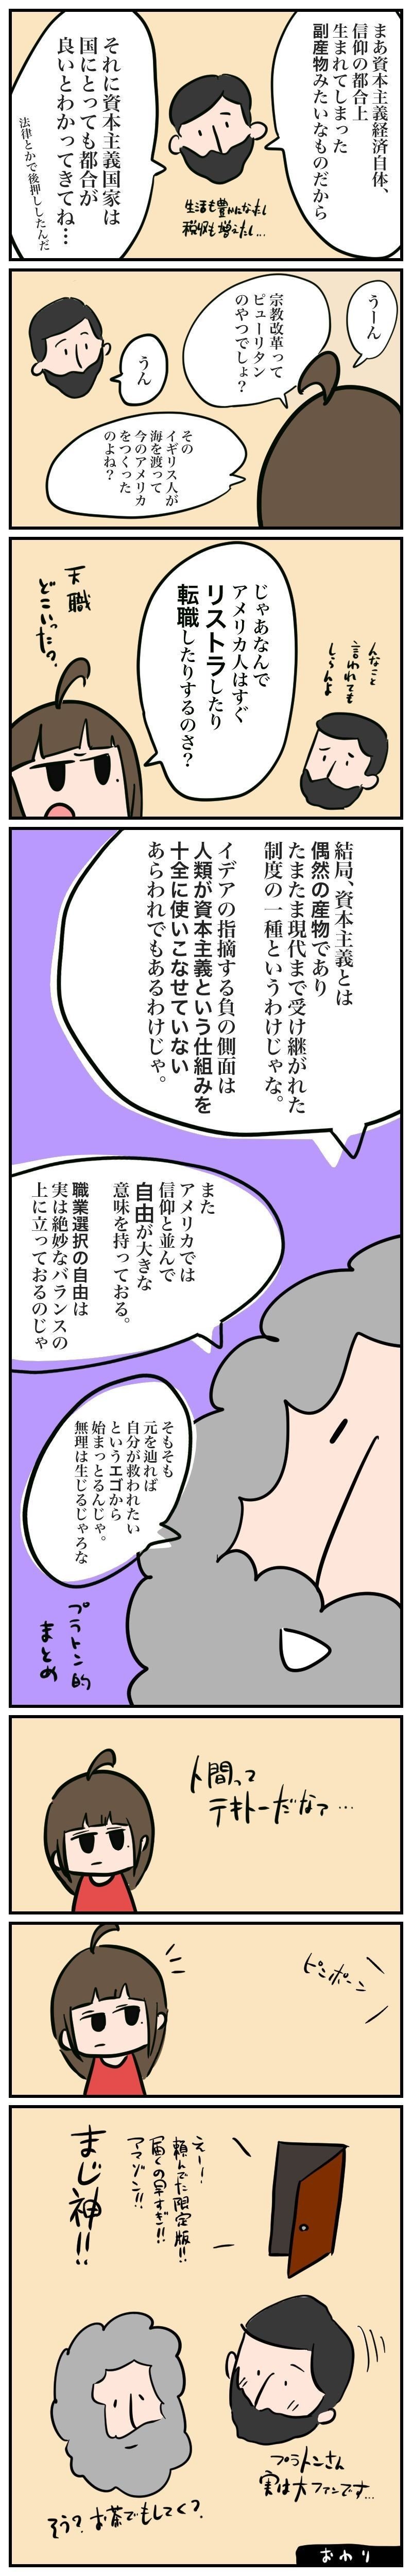 がんばれイデアちゃん1-4